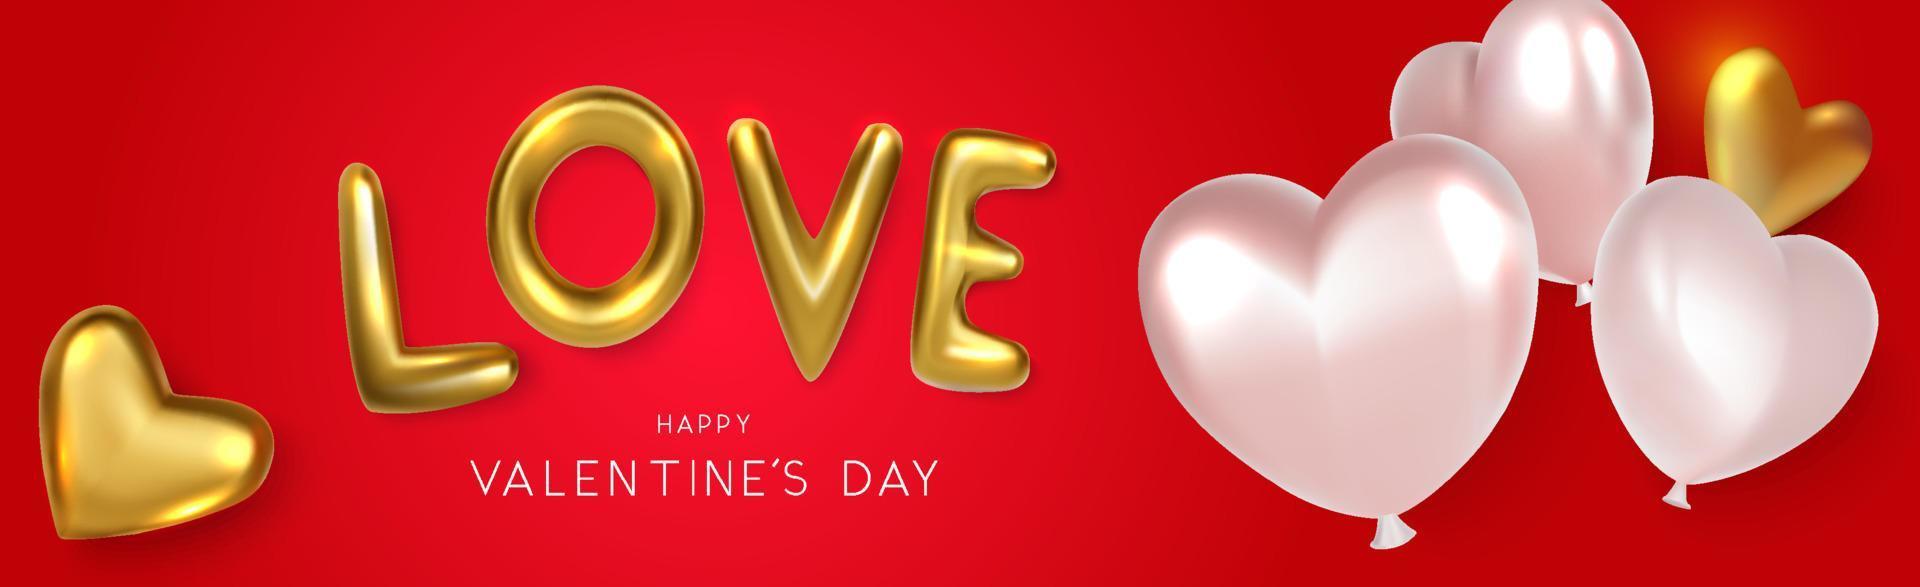 bannière d'amour horizontale avec des ballons coeur sur fond rouge vecteur